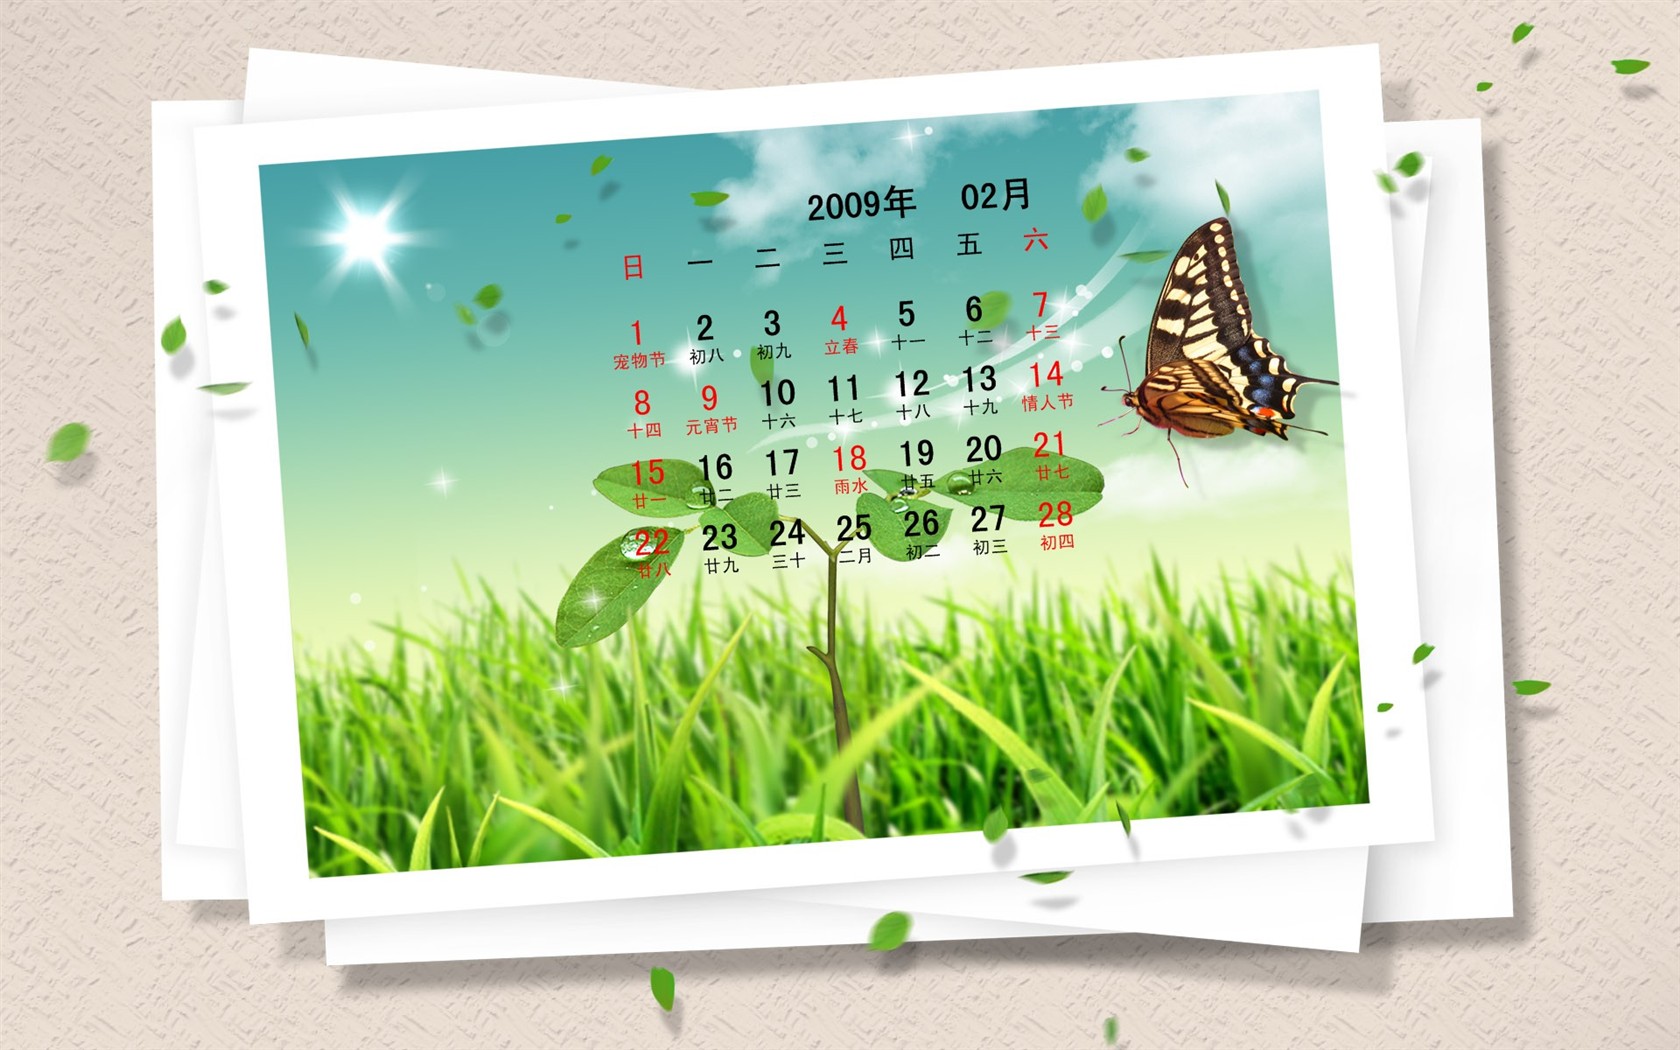 PaperArt 09 años en el fondo de pantalla de calendario febrero #29 - 1680x1050